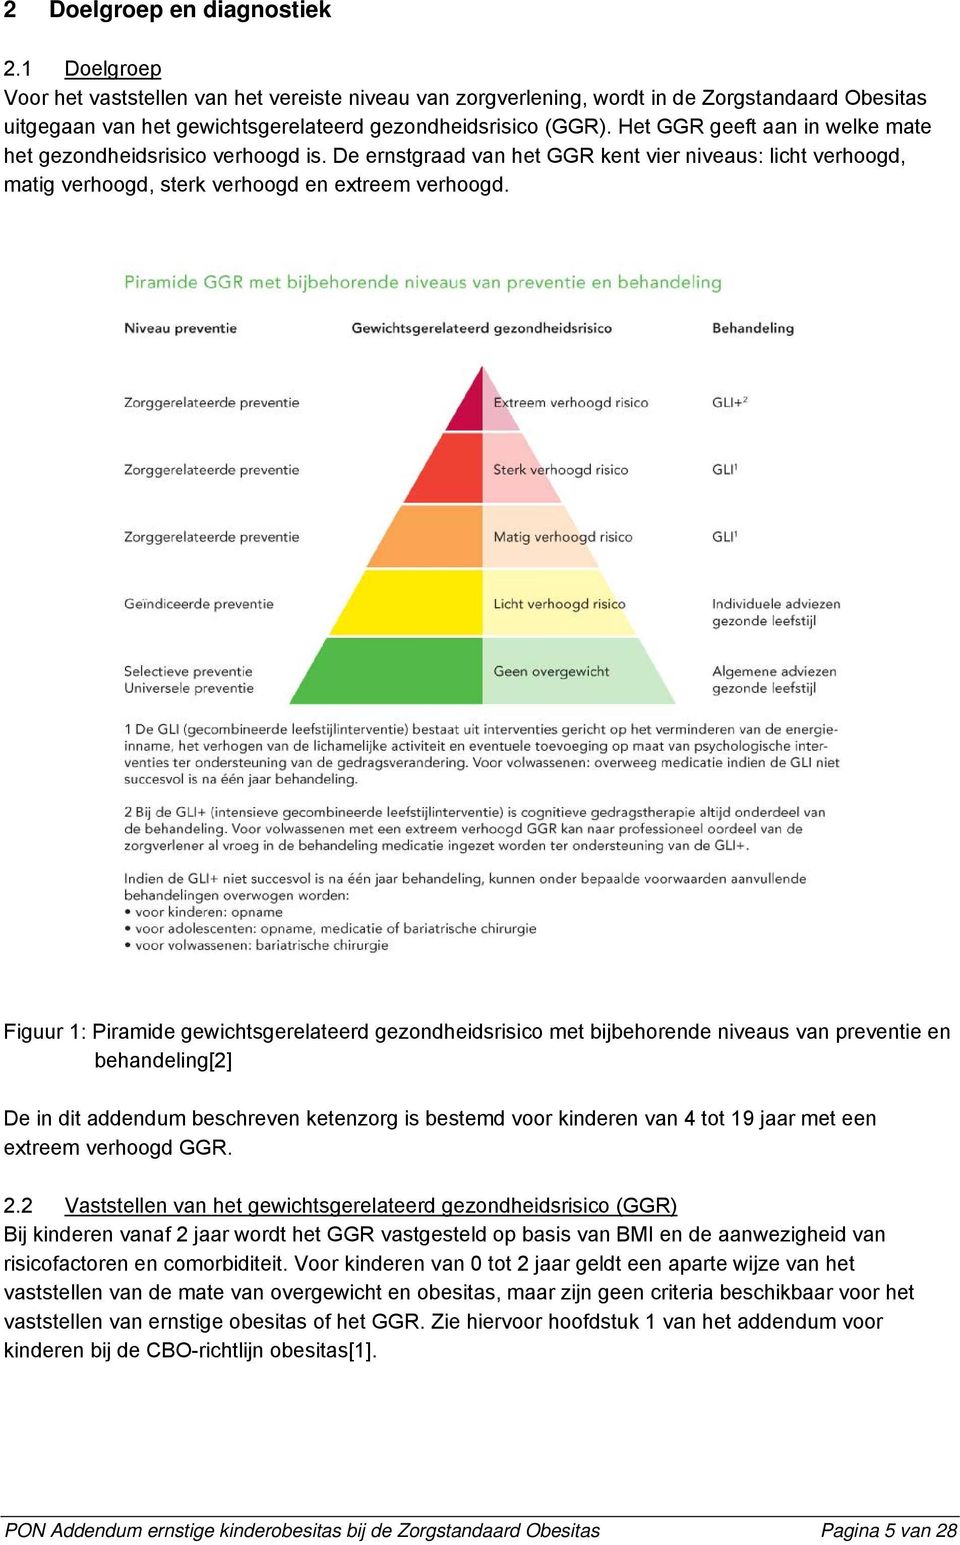 Het GGR geeft aan in welke mate het gezondheidsrisico verhoogd is. De ernstgraad van het GGR kent vier niveaus: licht verhoogd, matig verhoogd, sterk verhoogd en extreem verhoogd.